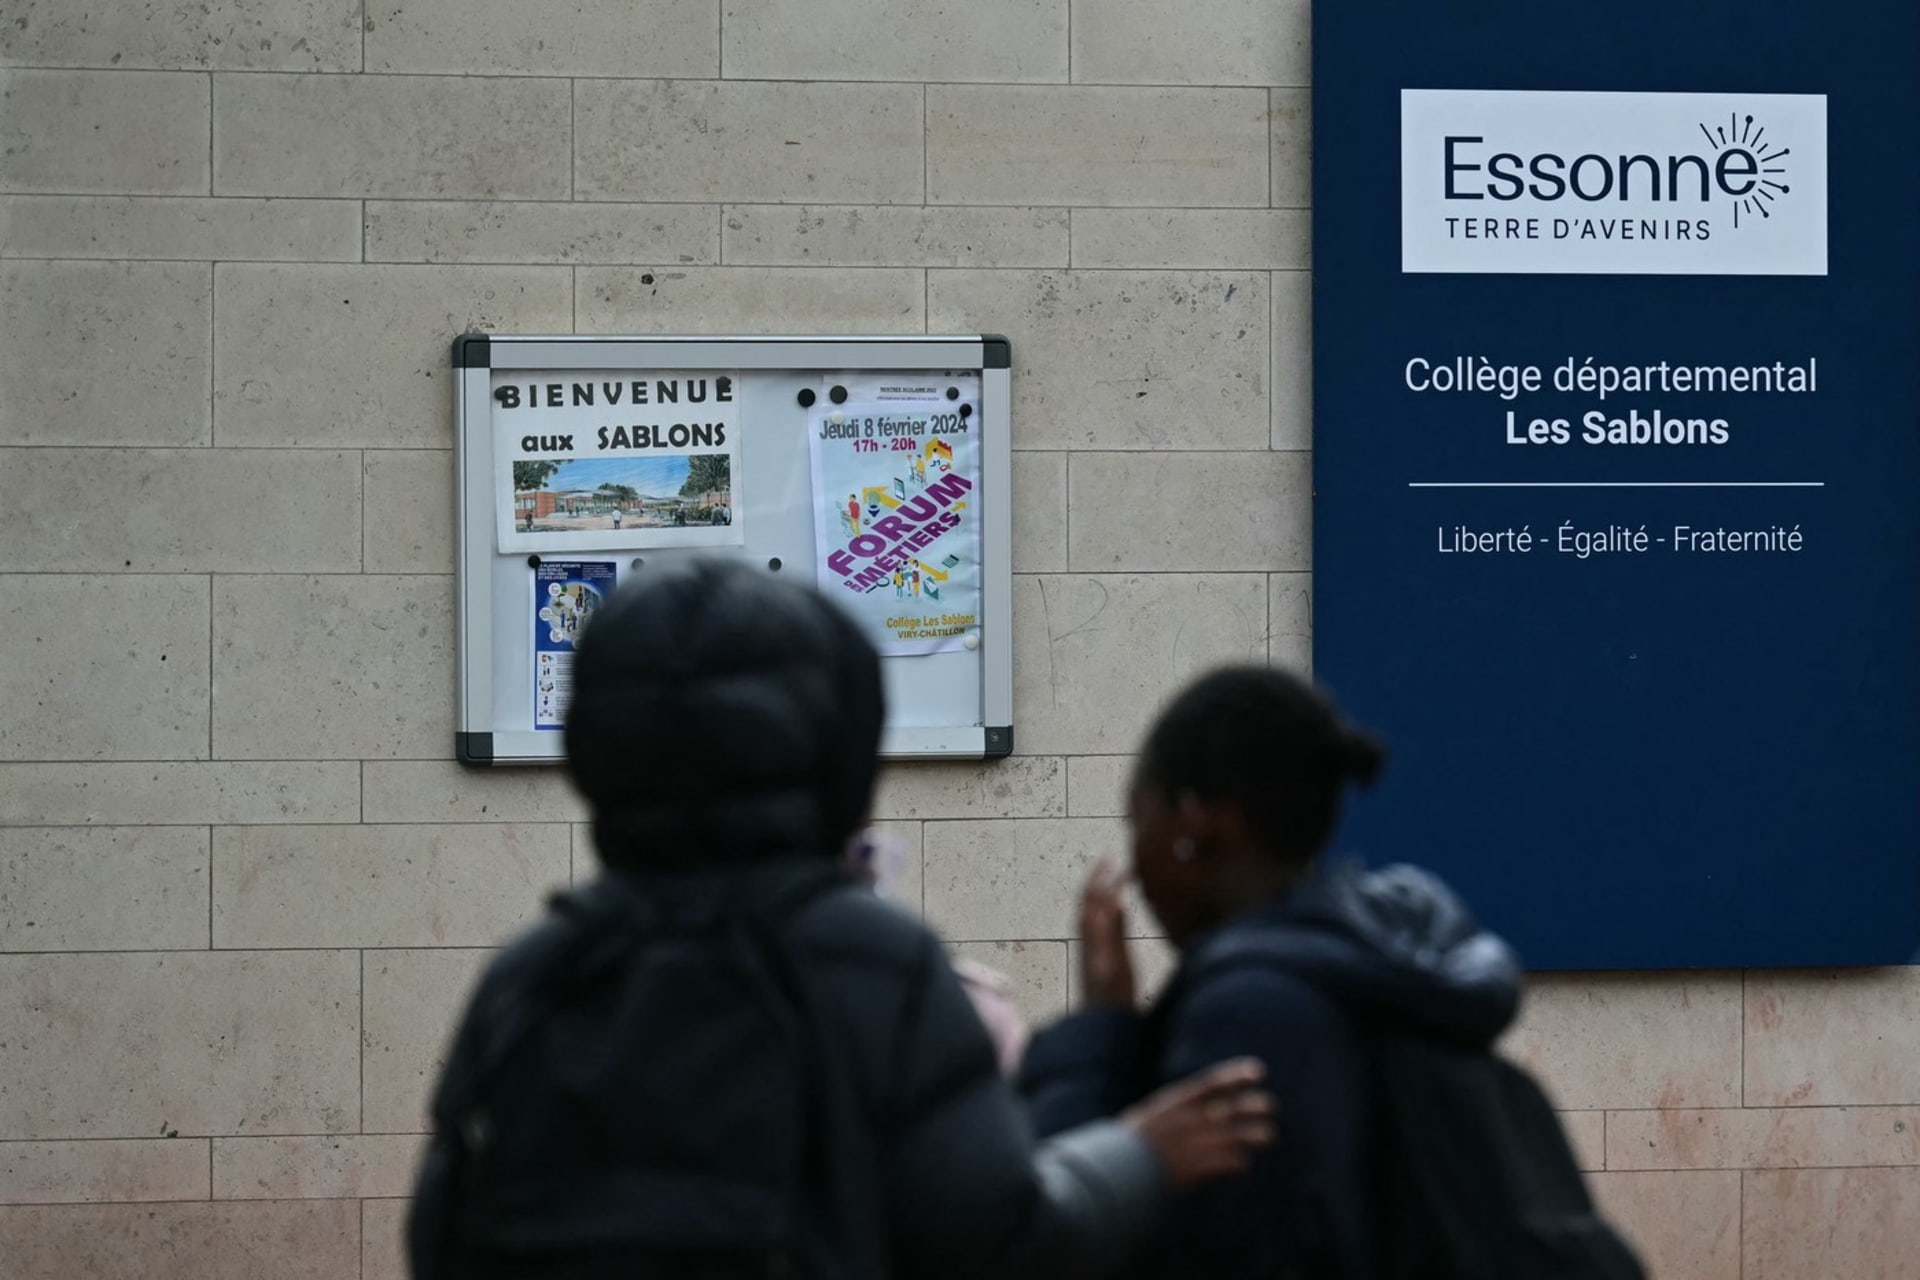 Škola ve městě Viry-Châtillon, nedaleko které napadla skupinka maskovaných lidí 15letého chlapce. Útok nepřežil